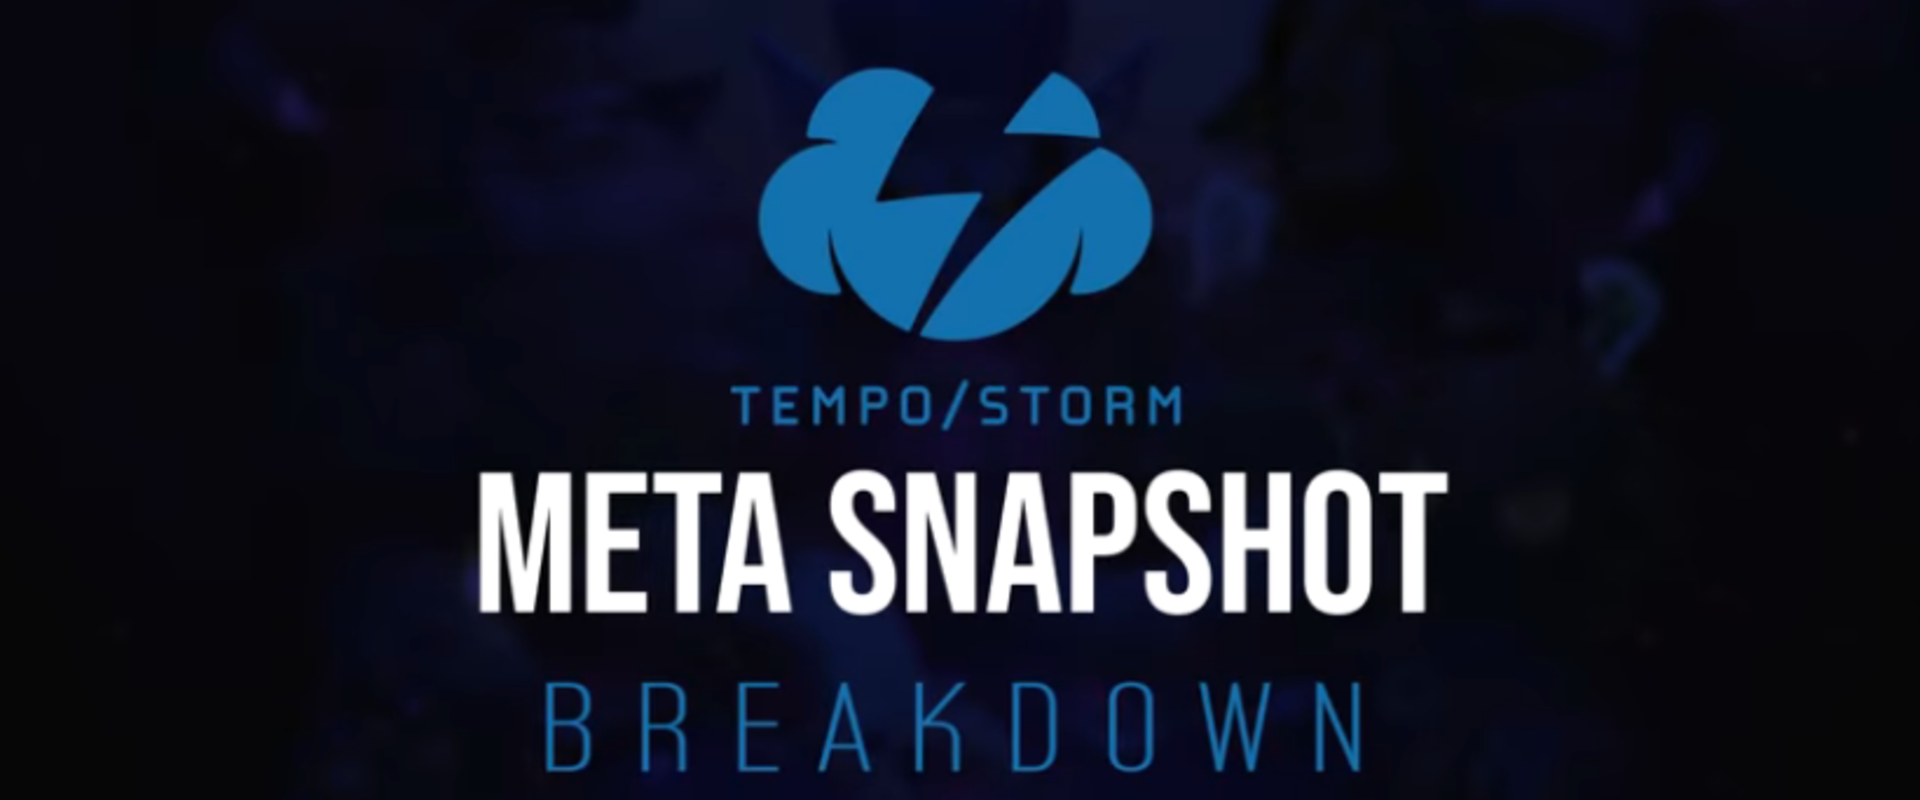 A Tempo Storm metaelemzése is megérkezett nemrég